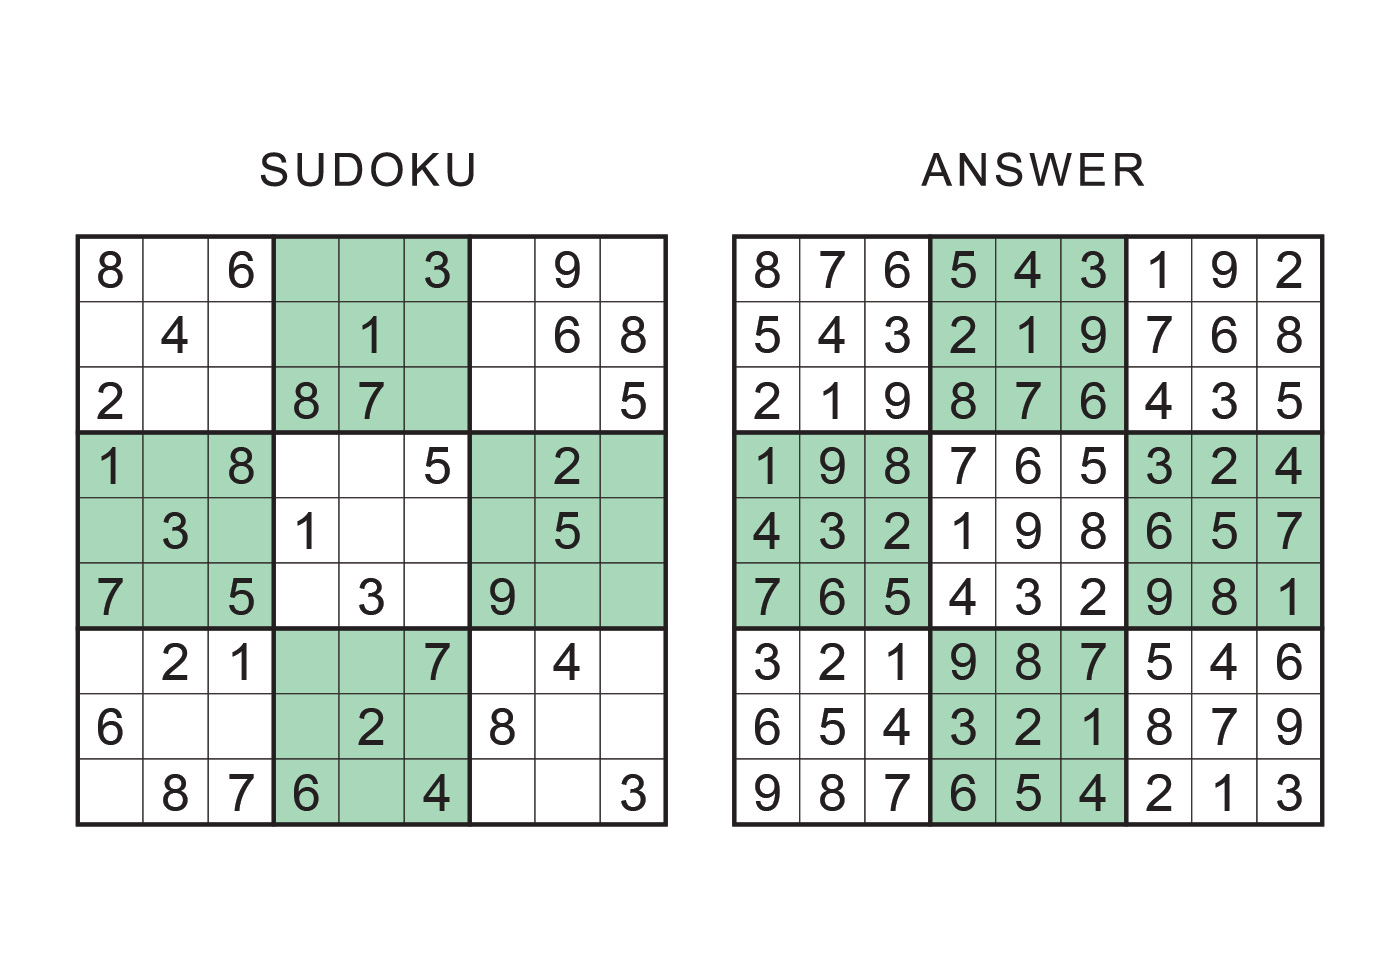 Https sudoku com. Судоку. Судоку с ответами. Судоку сложные с ответами. Сумдоку сложные с ответами.